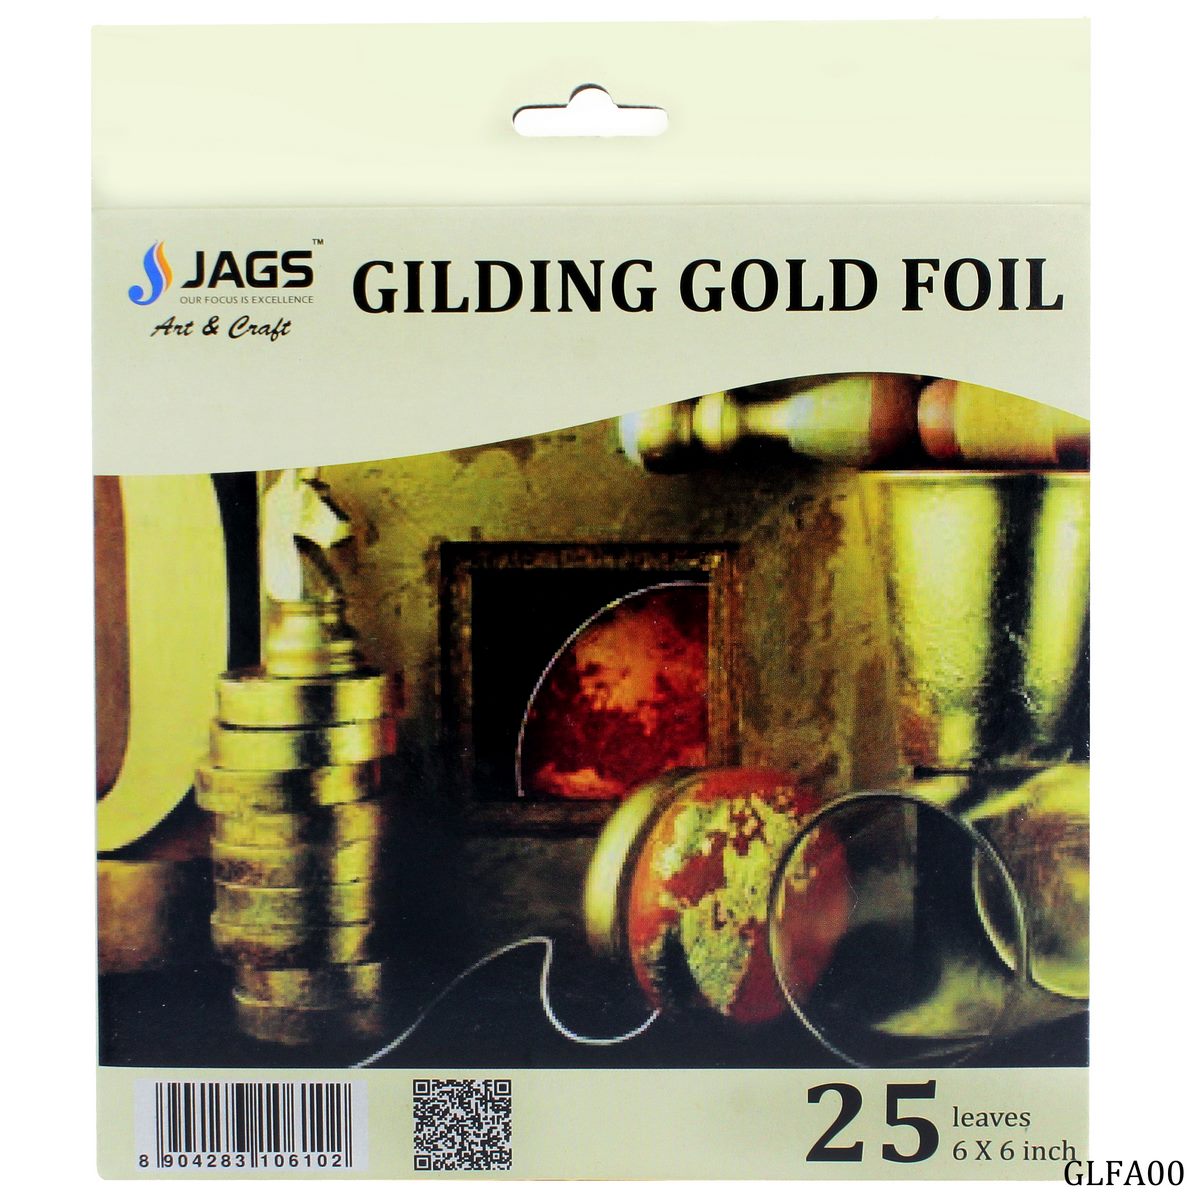 jags-mumbai Toys & Kits Gliding Gold Foil